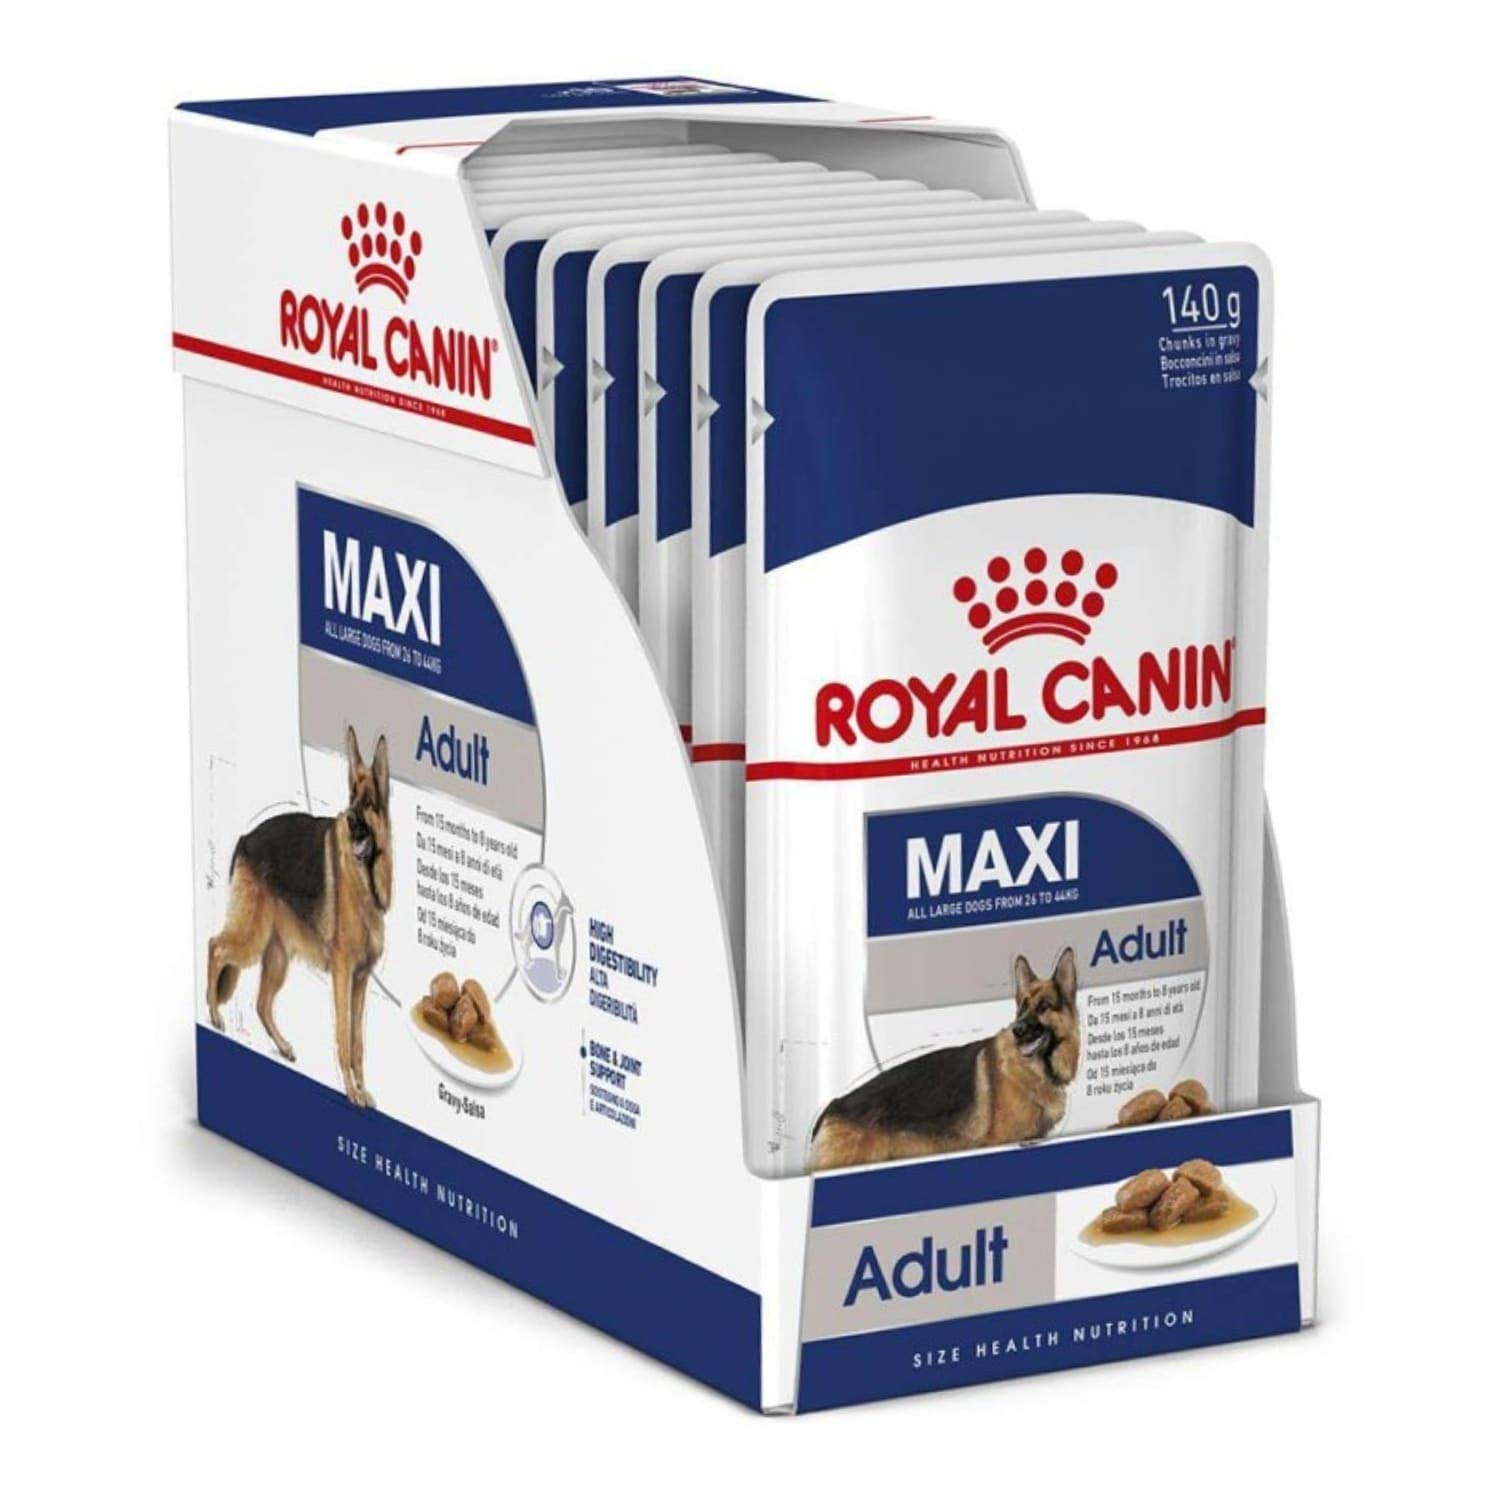 Royal Canin Maxi (1+Age) Gravy